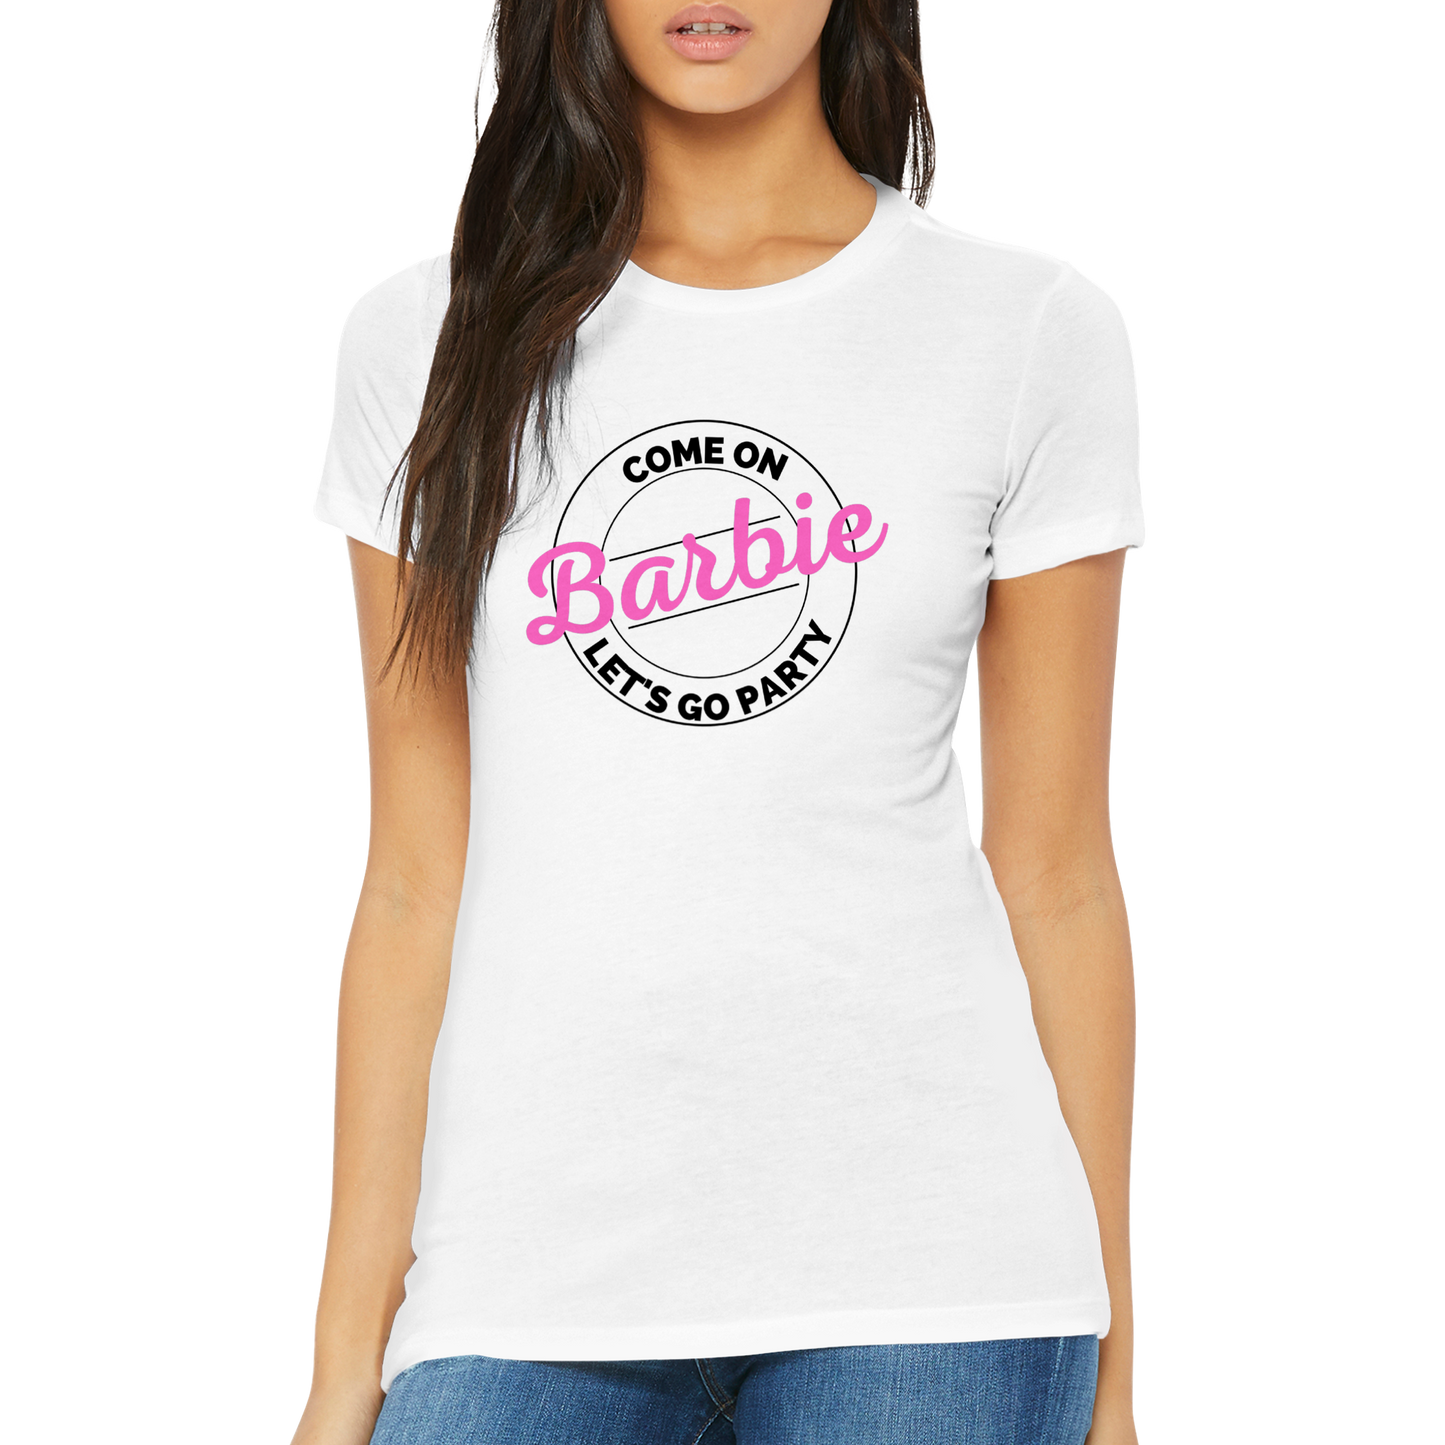 Cmon Barbie Lets Go Party Come on Barbie - Premium Womens Crewneck T-shirt